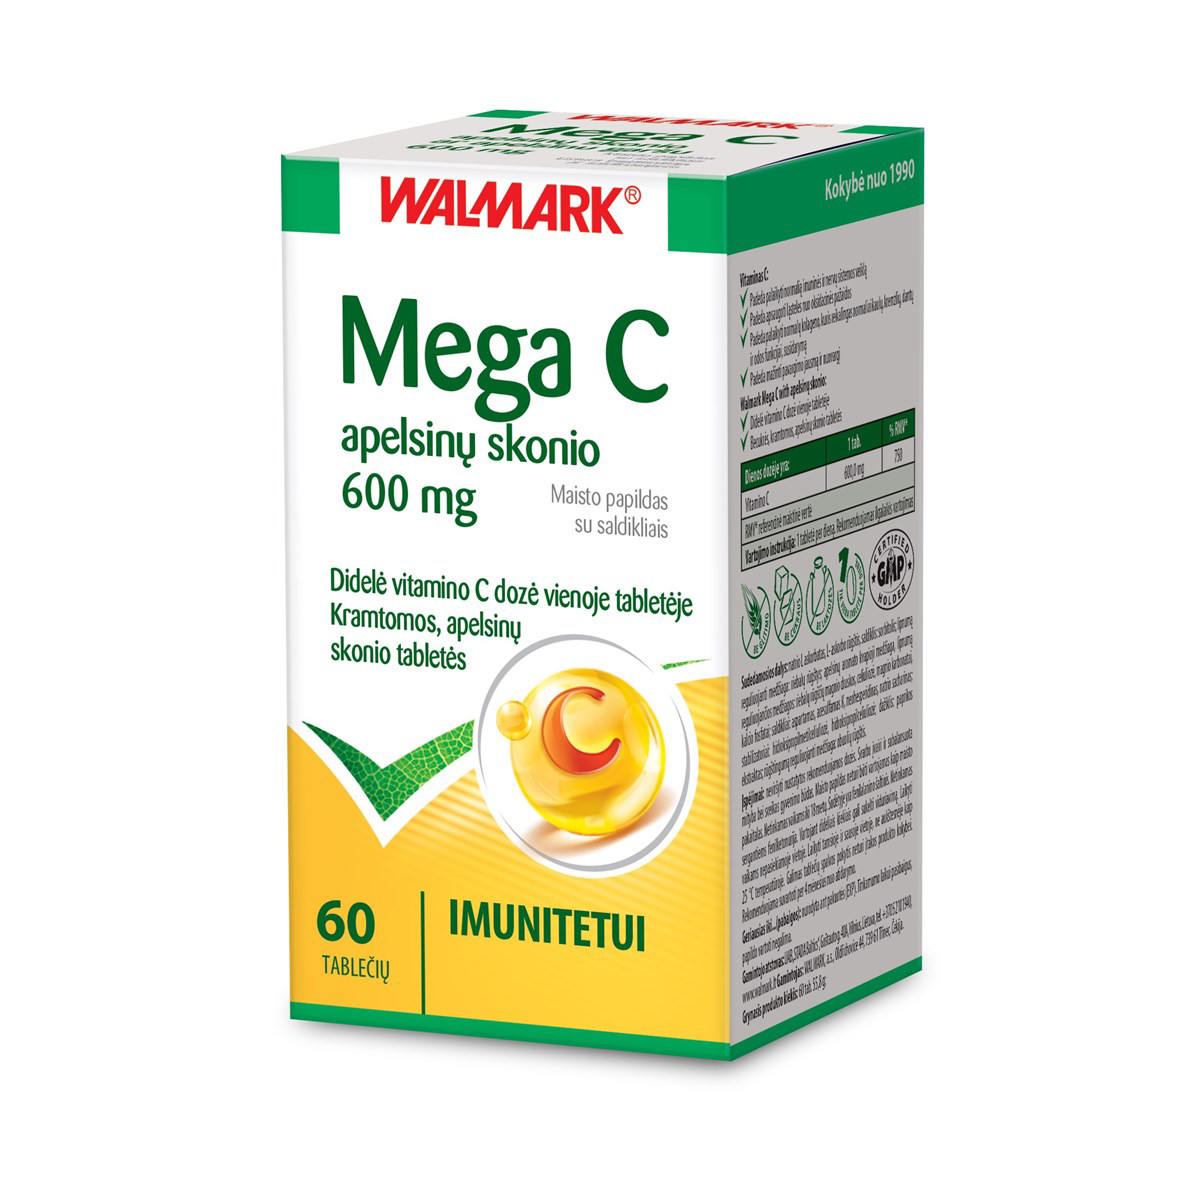 MEGA C APELSINŲ SKONIO, 60 kramtomų tablečių